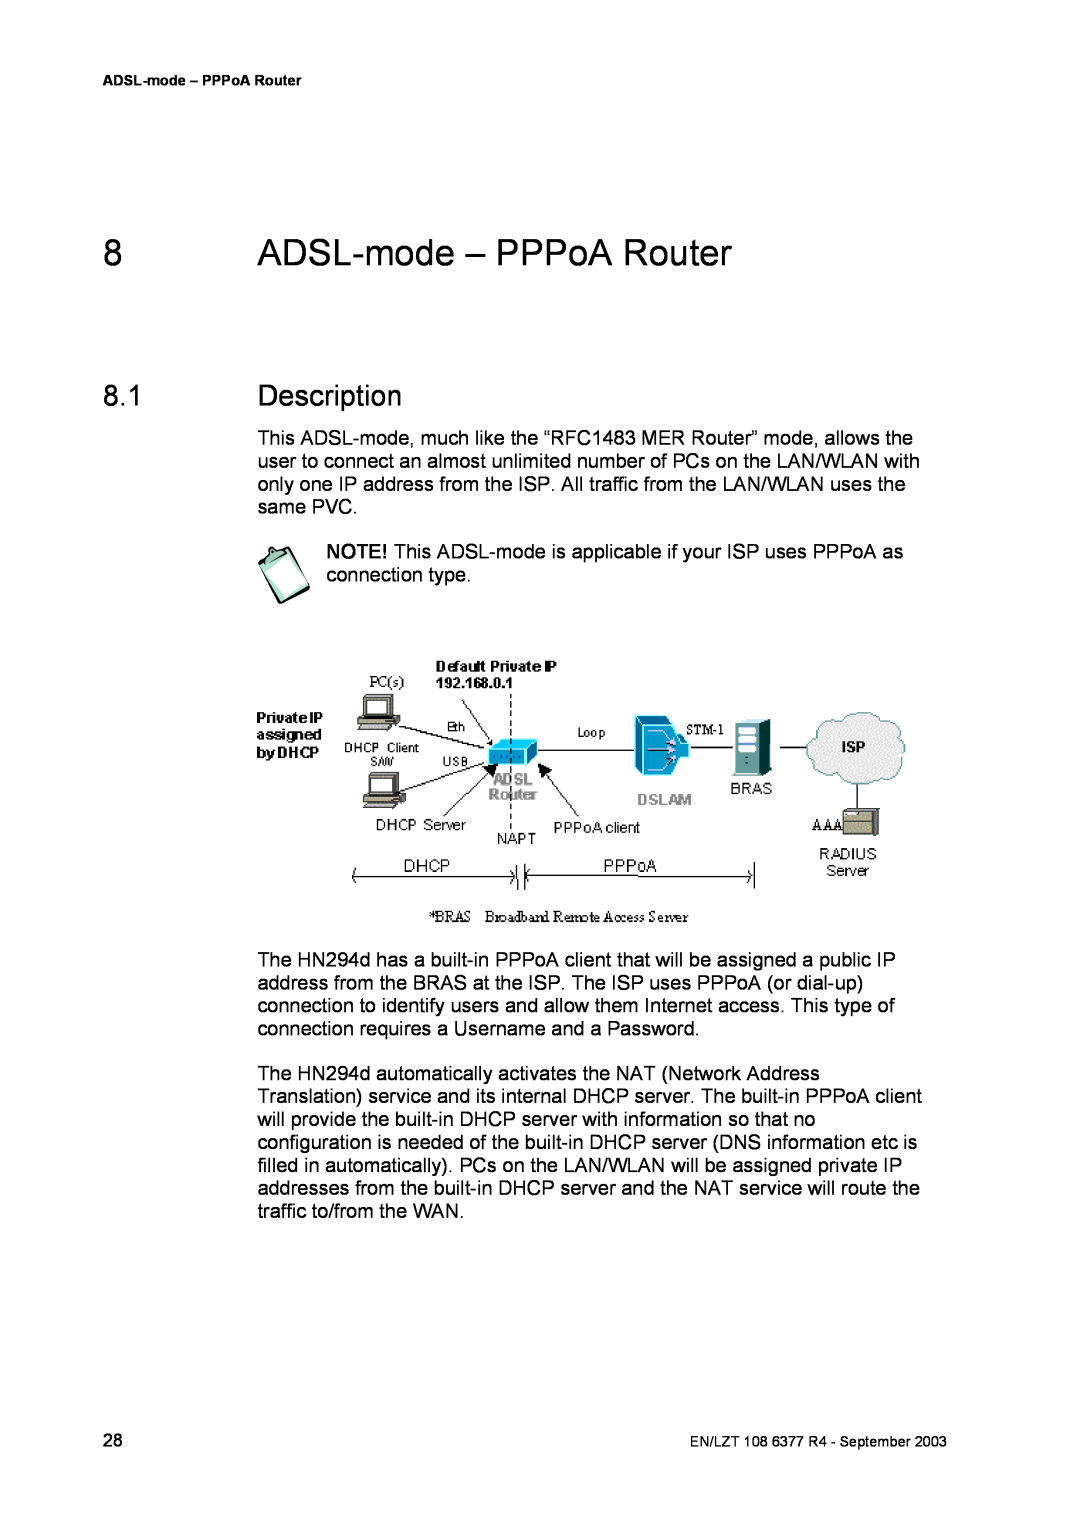 Garmin HN294DP/DI manual ADSL-mode - PPPoA Router, Description 